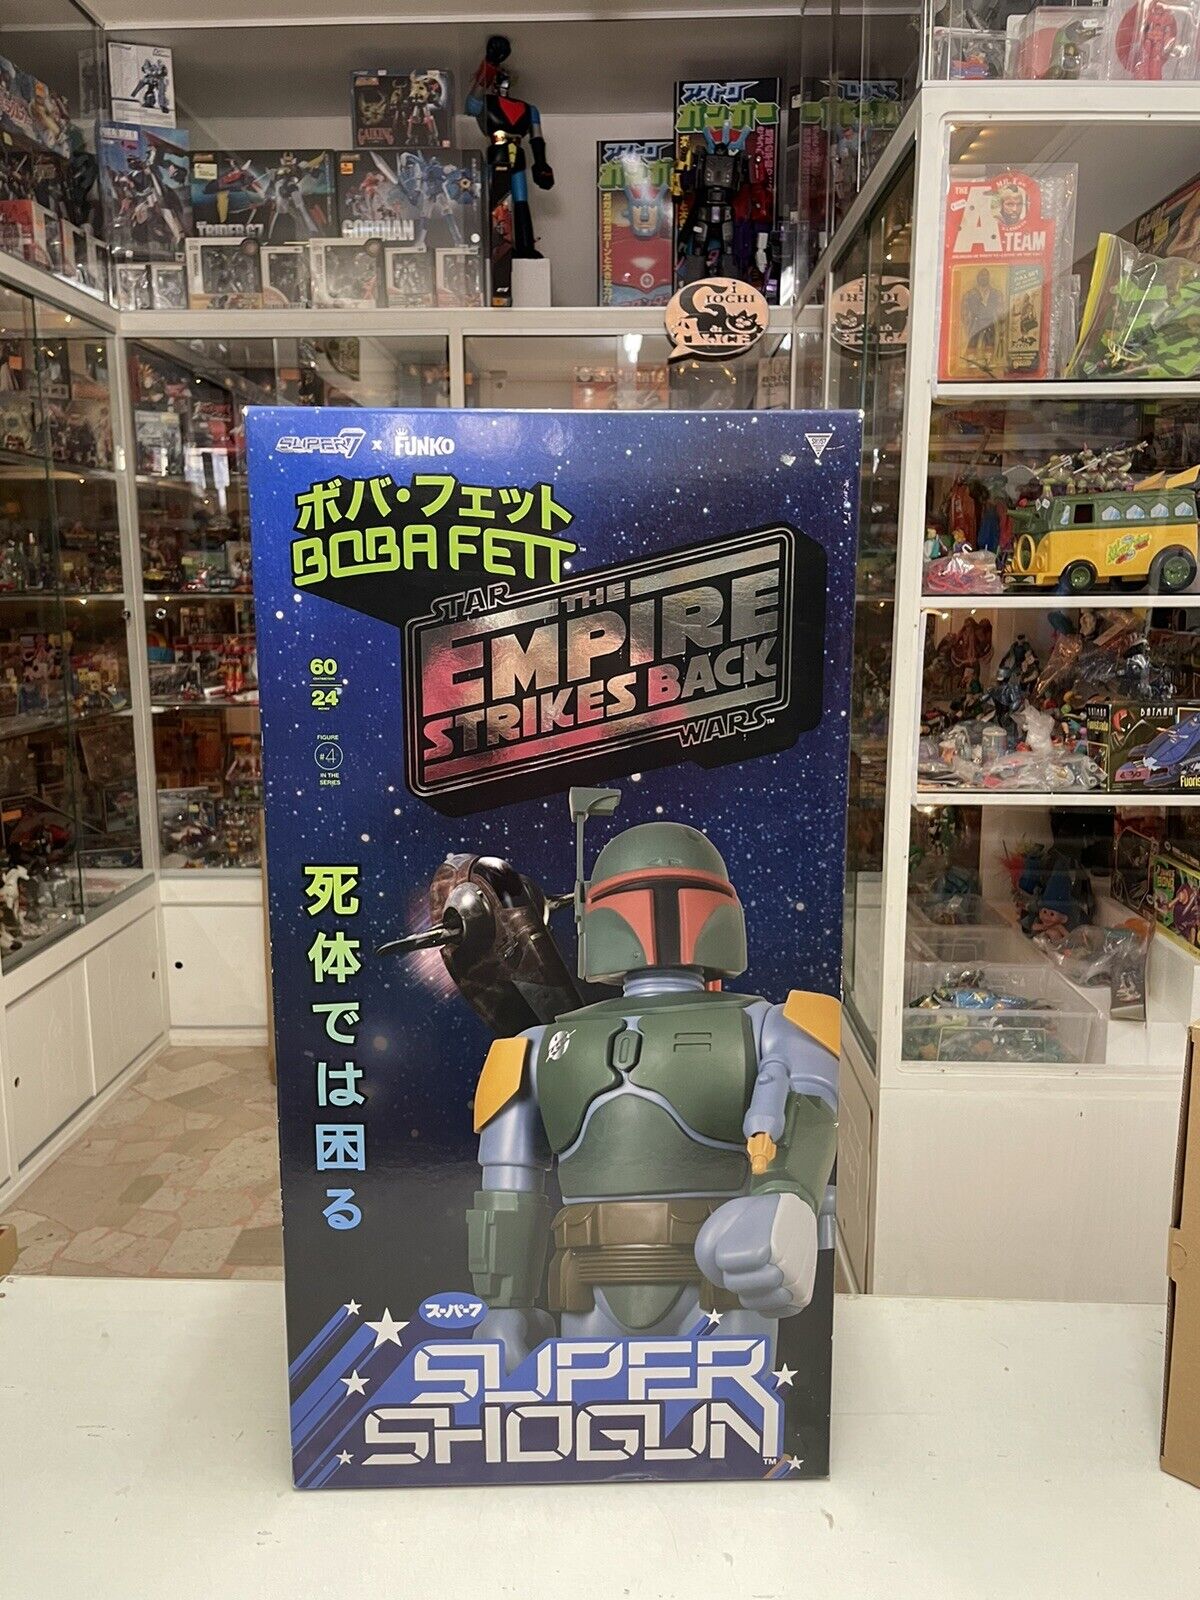 Star-Wars-BOBA-FETT-Super-Shogun-SUPER-7-jumbo-funko-24-60cm-134415404626